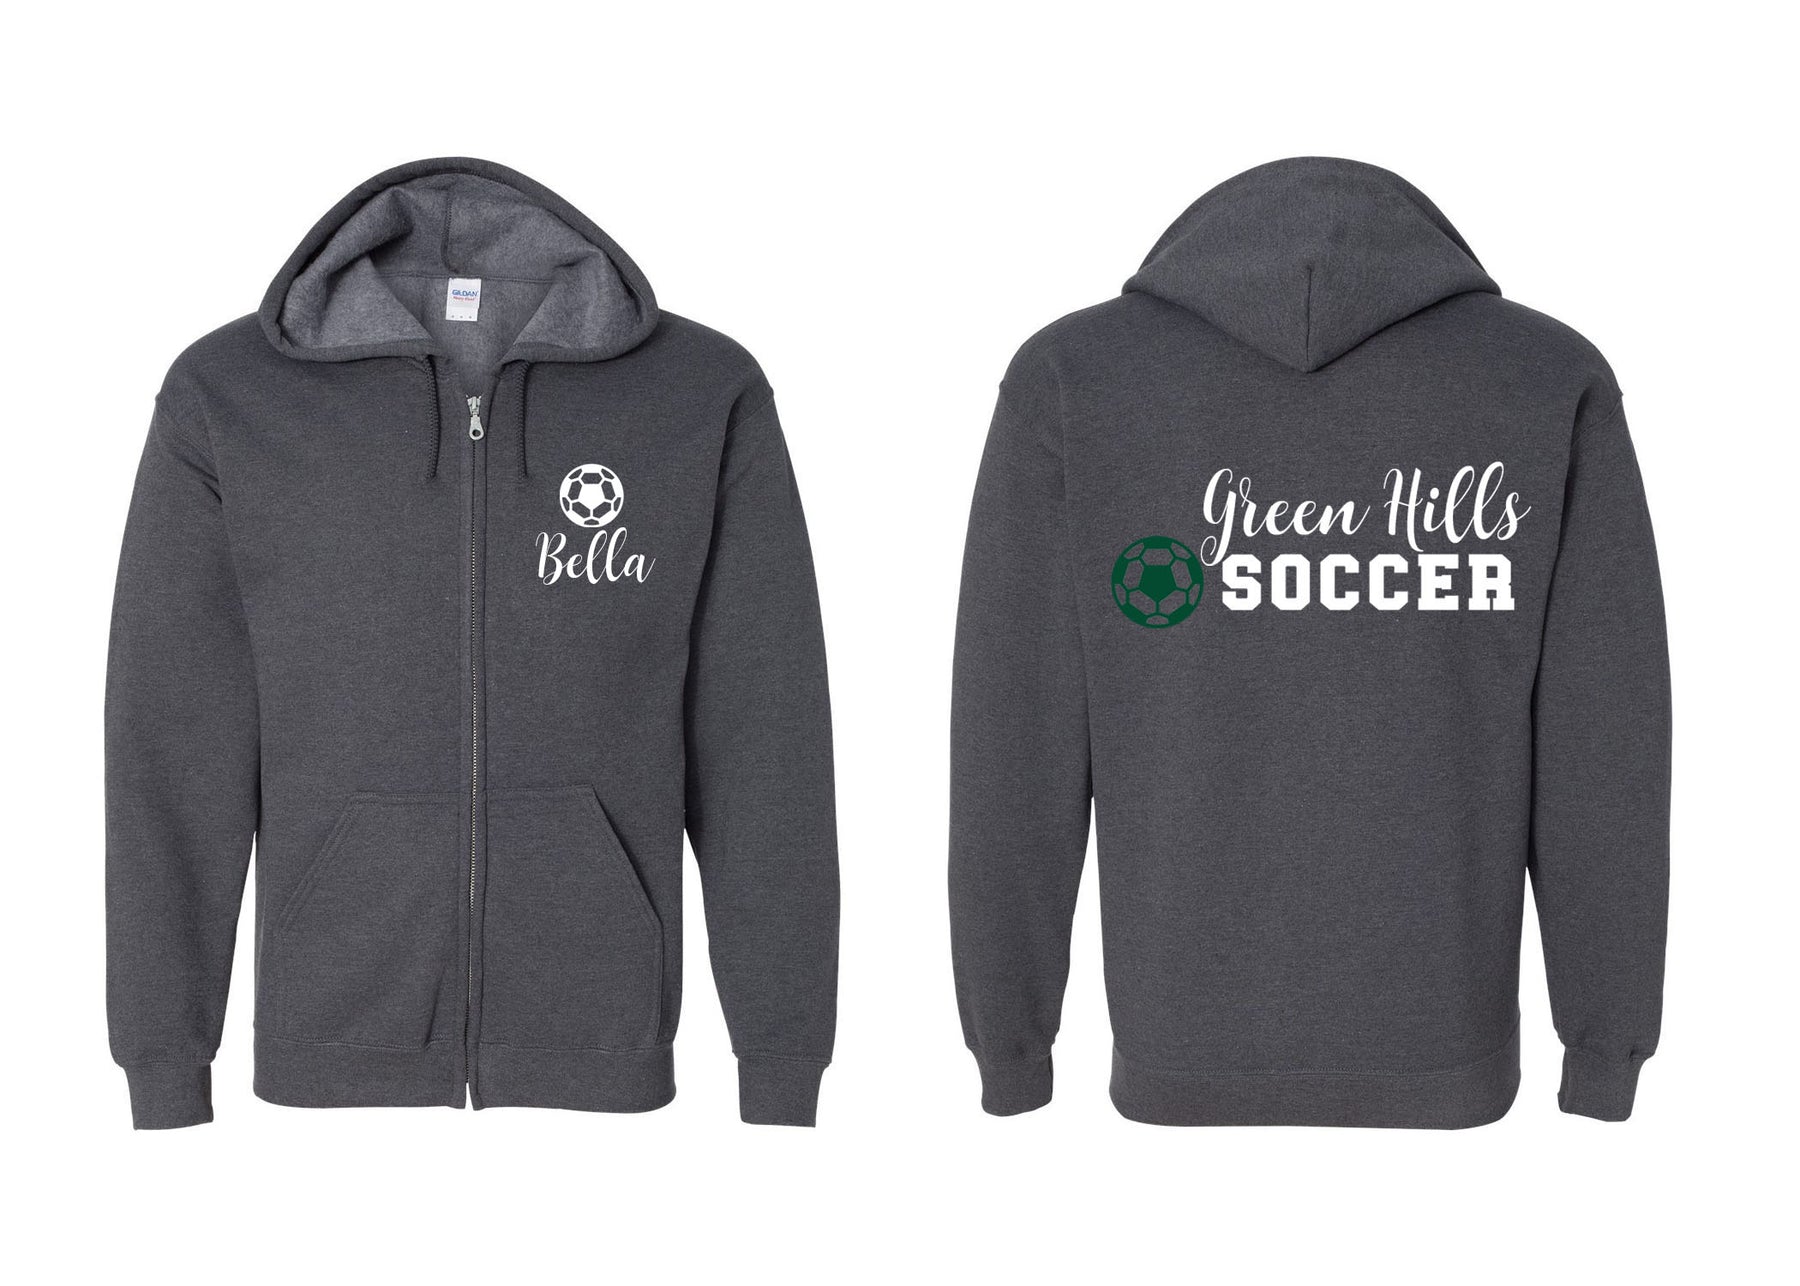 Green Hills Soccer design 3 Zip up Sweatshirt